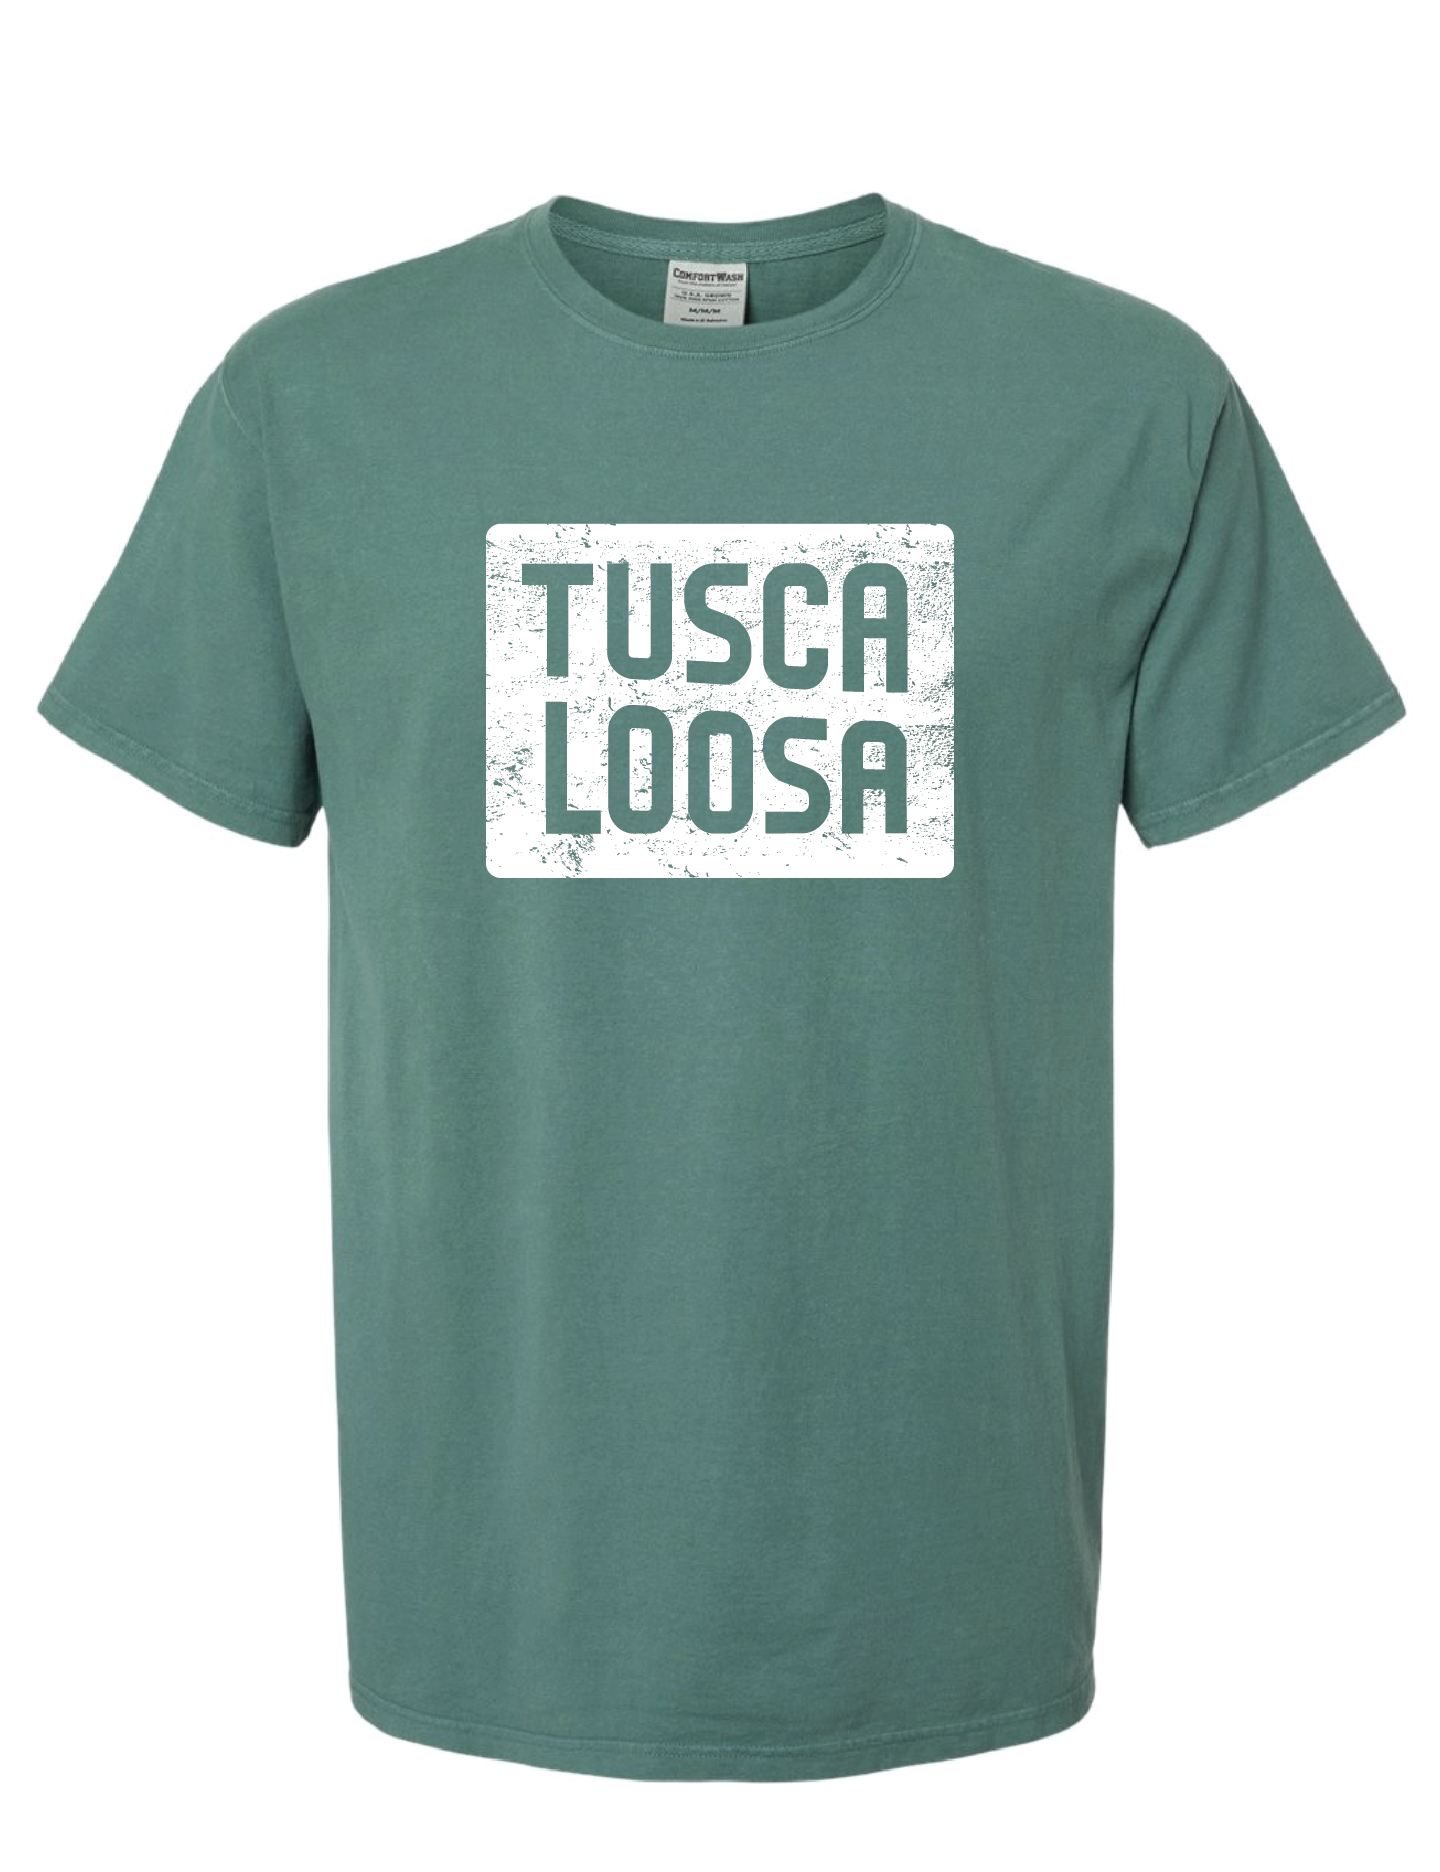 Visit Tuscaloosa: Short Sleeve WHITE TUSCALOOSA Tee